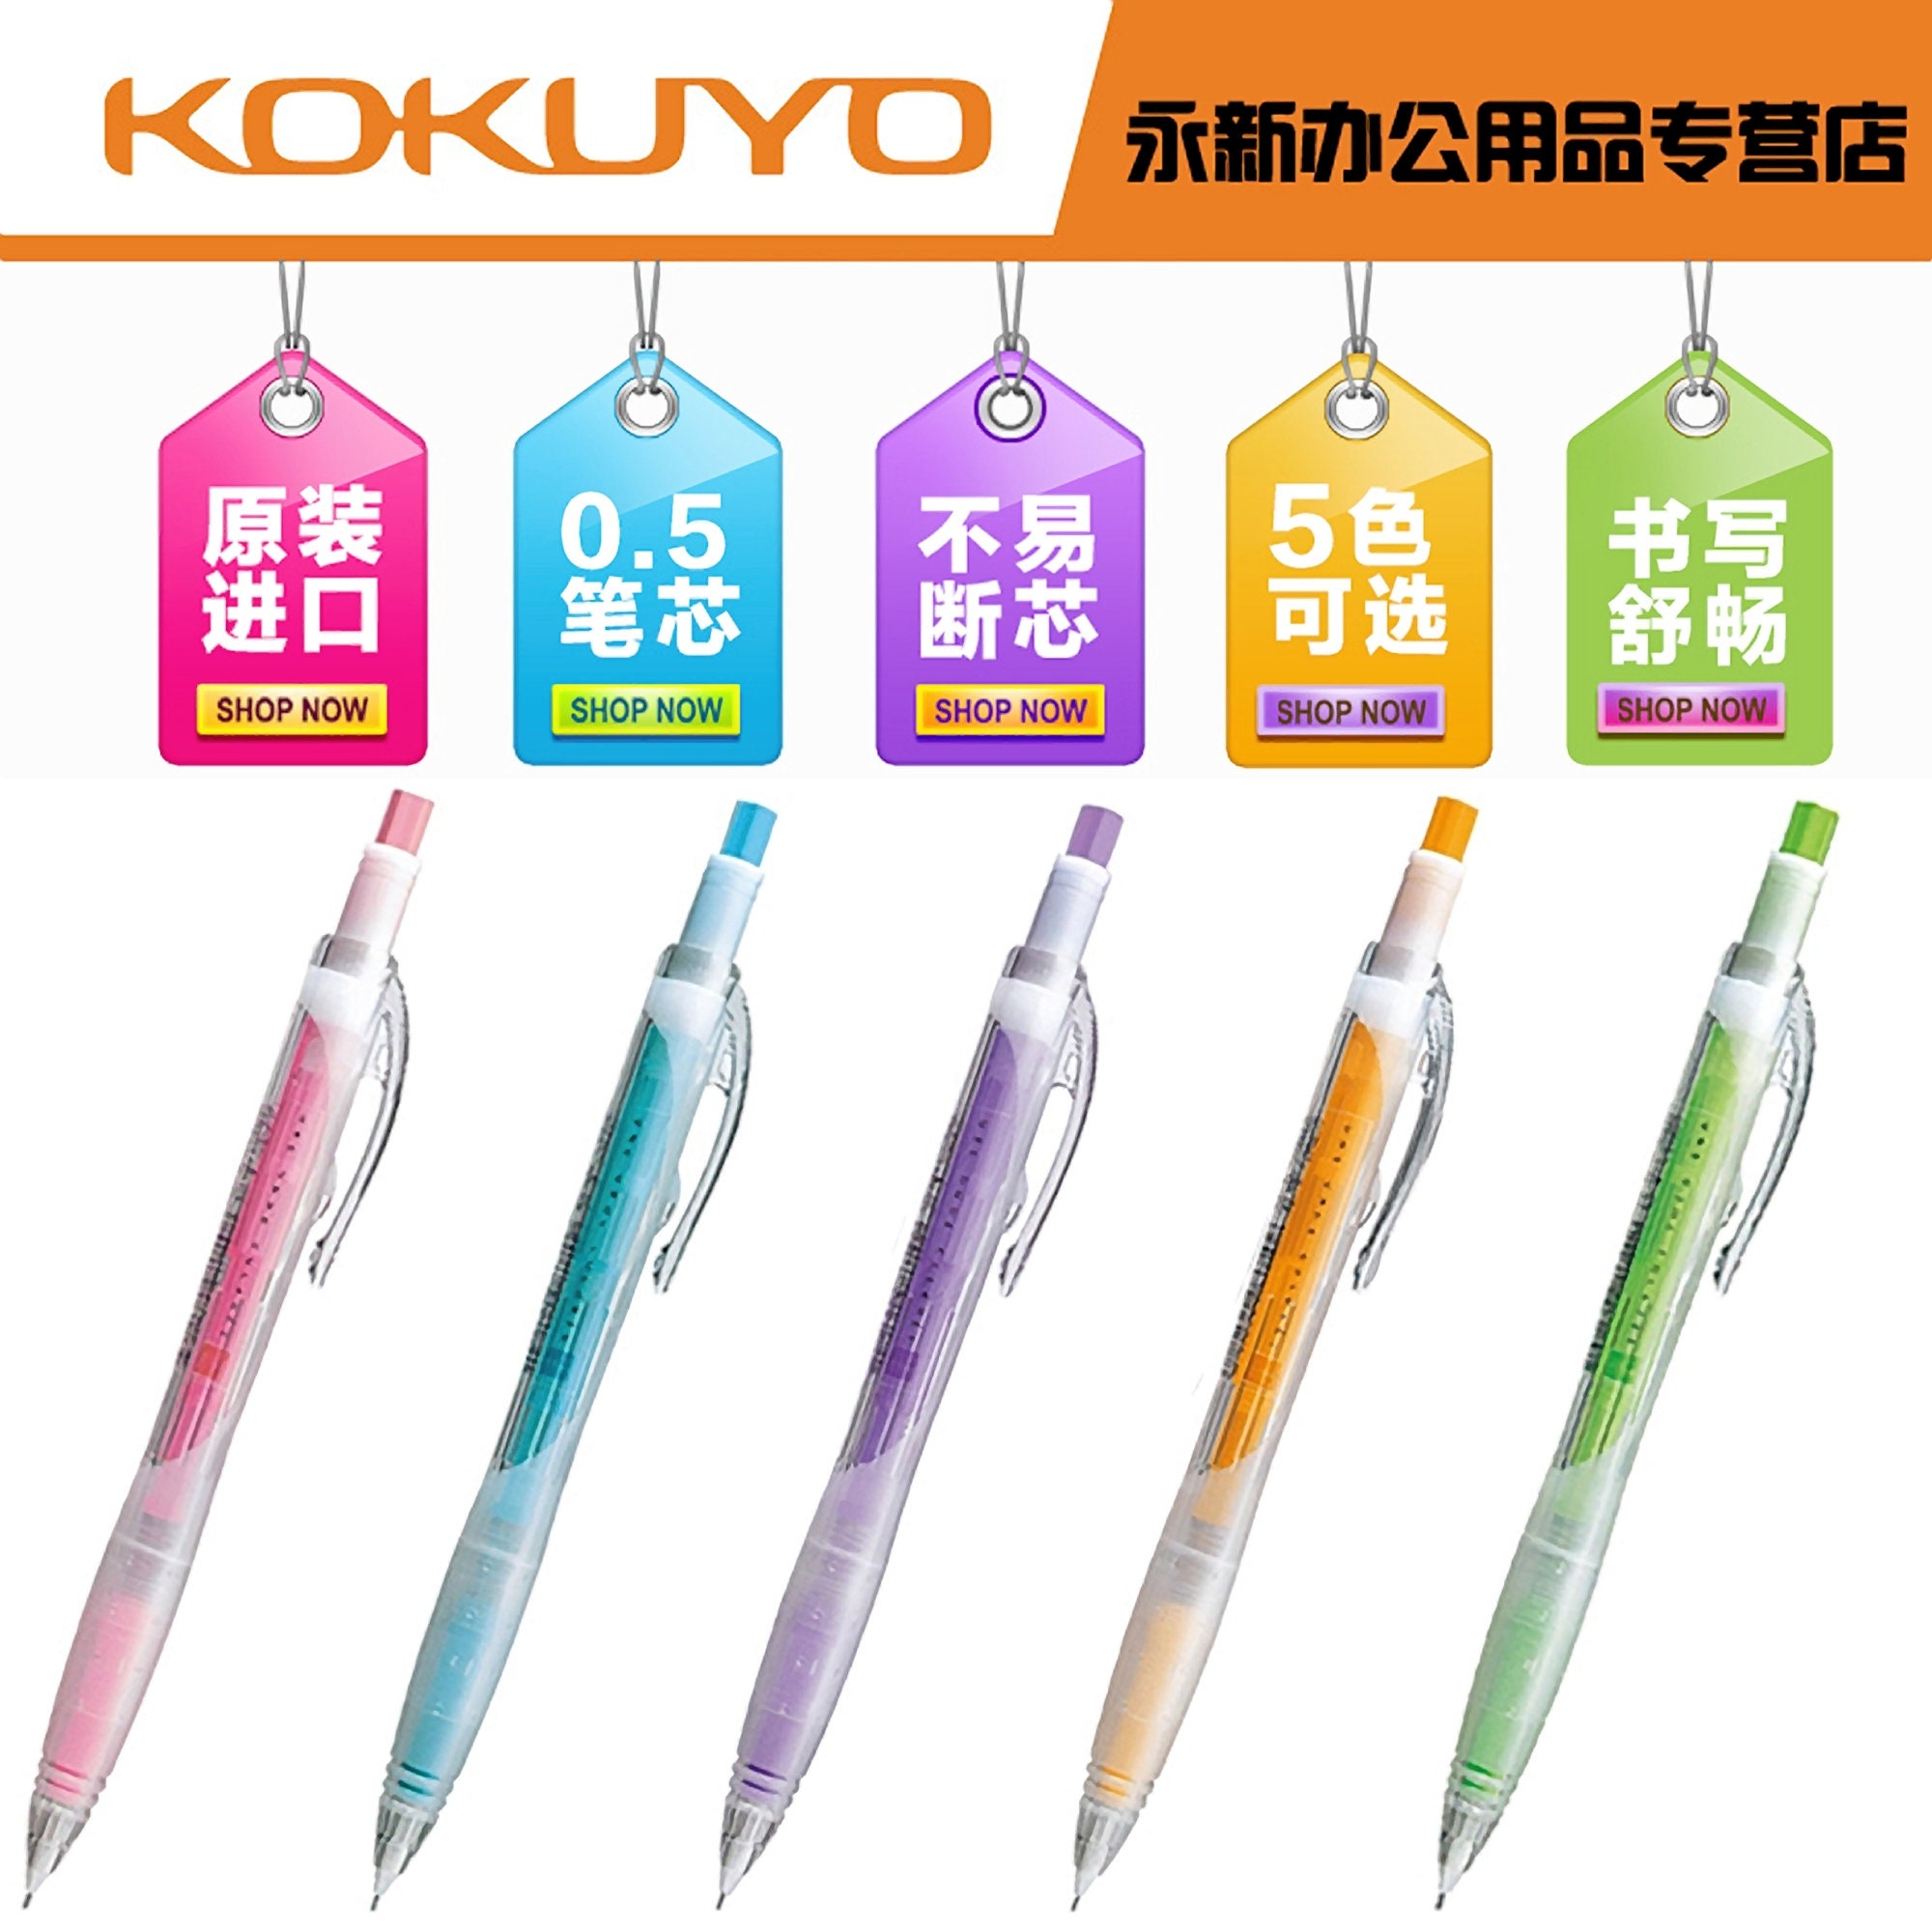 Kokuyo Pencil Case  CR2 PENCIL CASE 8 Add To